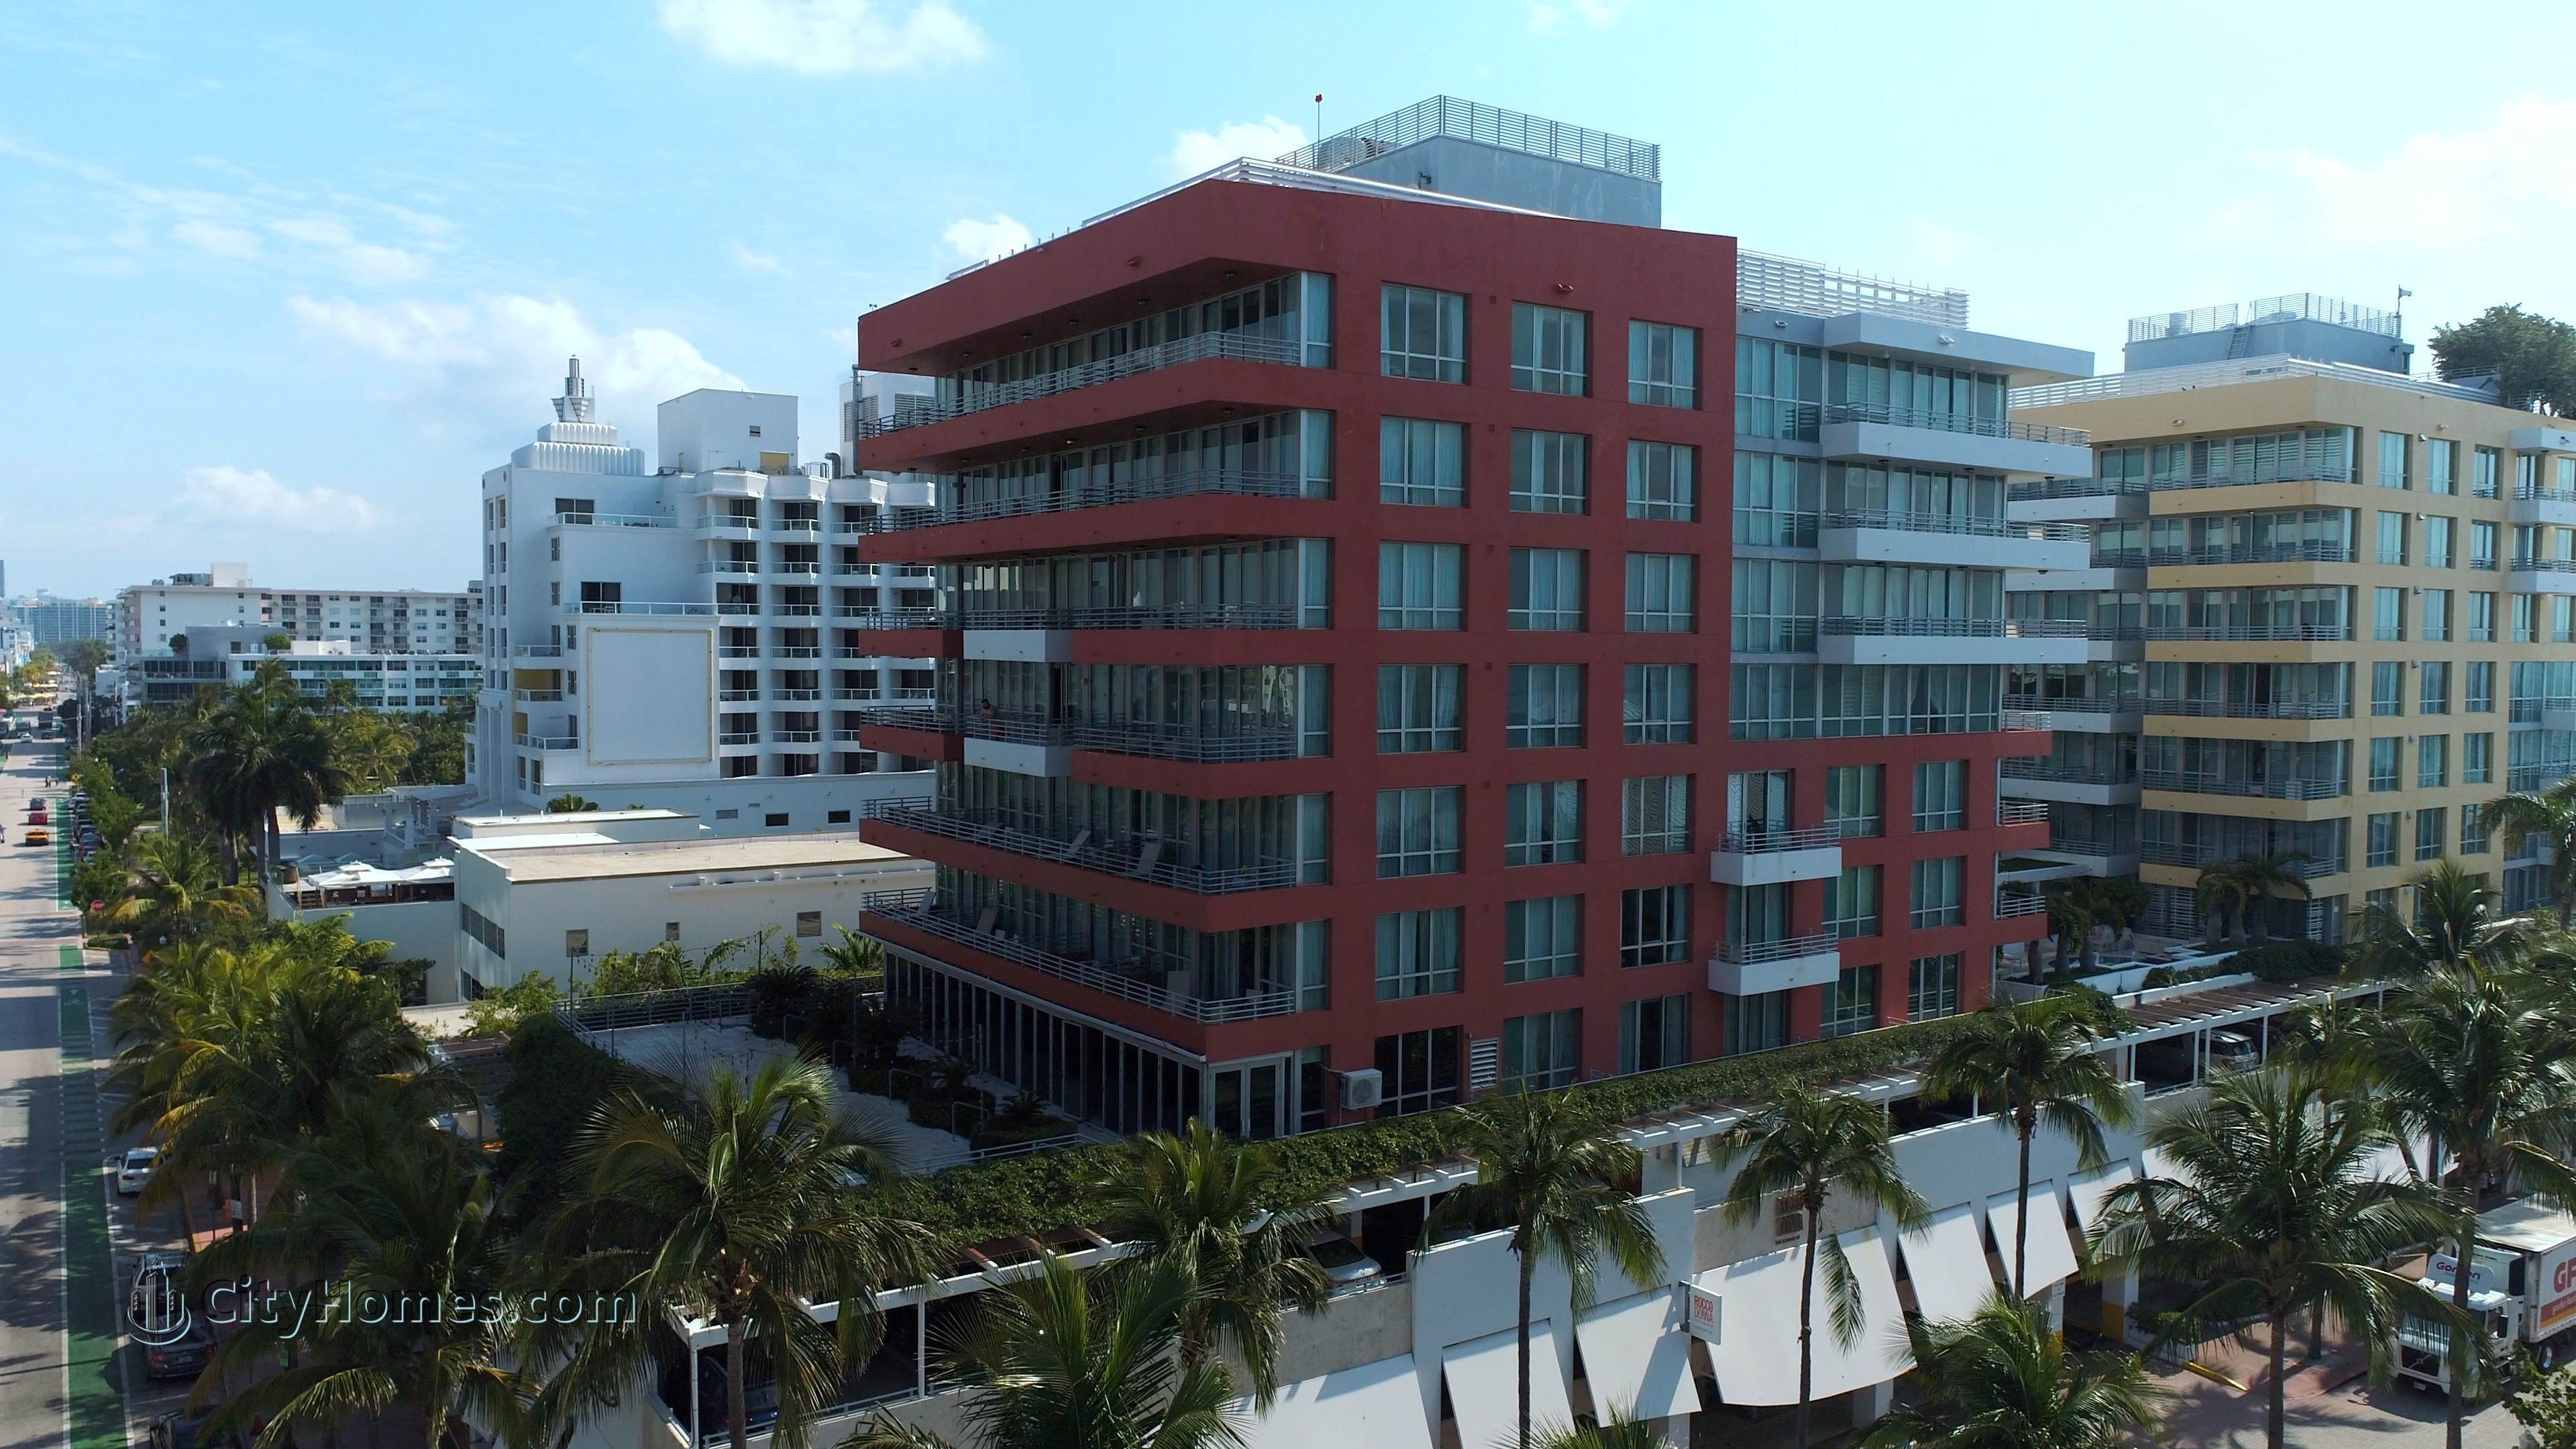 HILTON BENTLEY BEACH building at 101 Ocean Drive, Miami Beach, FL 33139